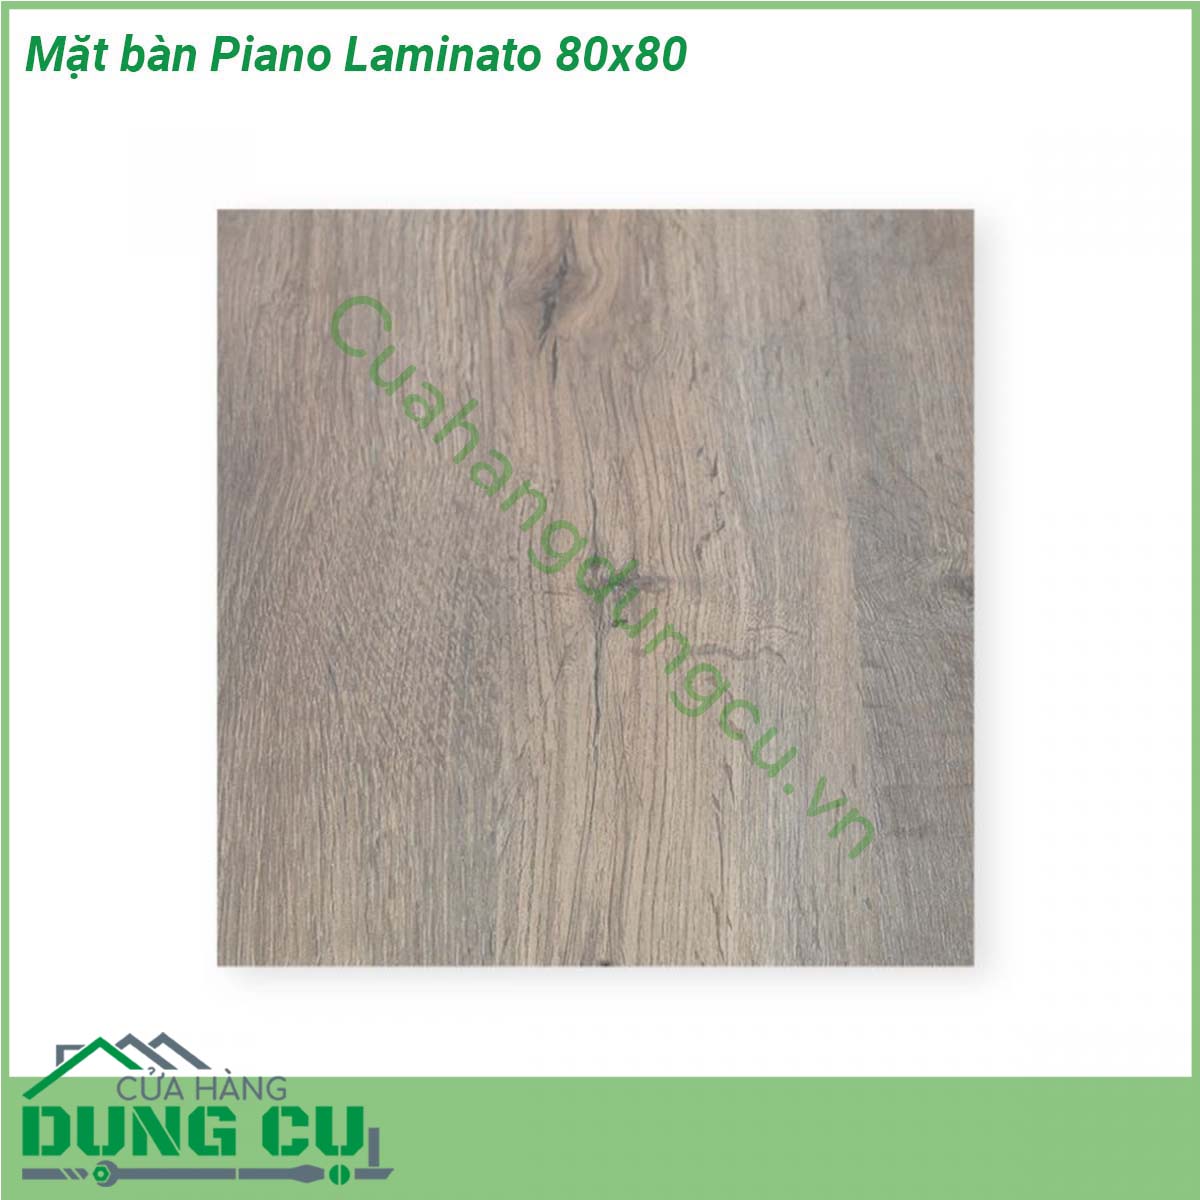 Mặt bàn Piano Laminato 80x80